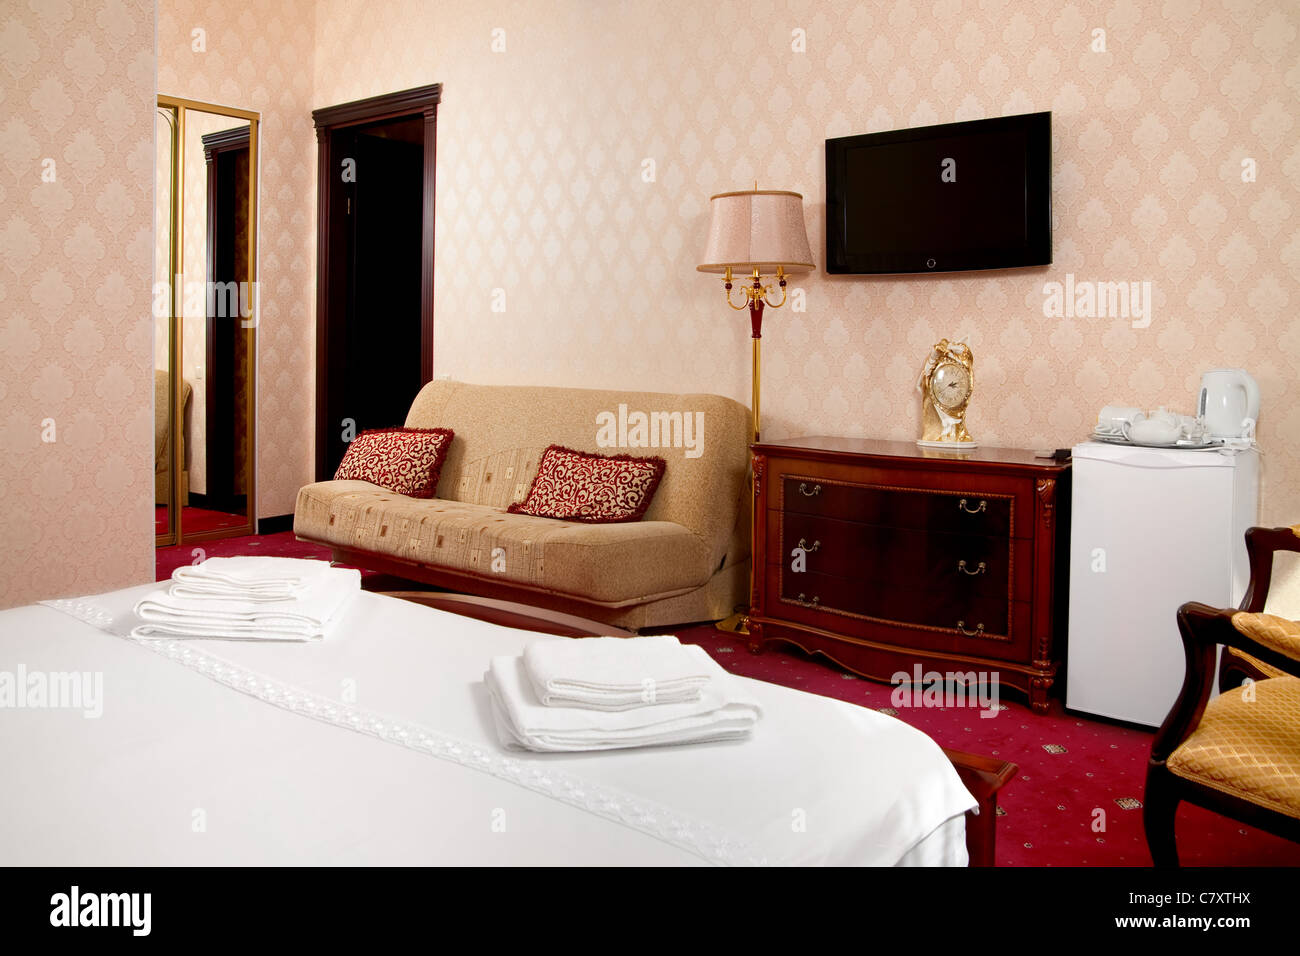 Numéro de l'hôtel avec tv dans un style classique Banque D'Images